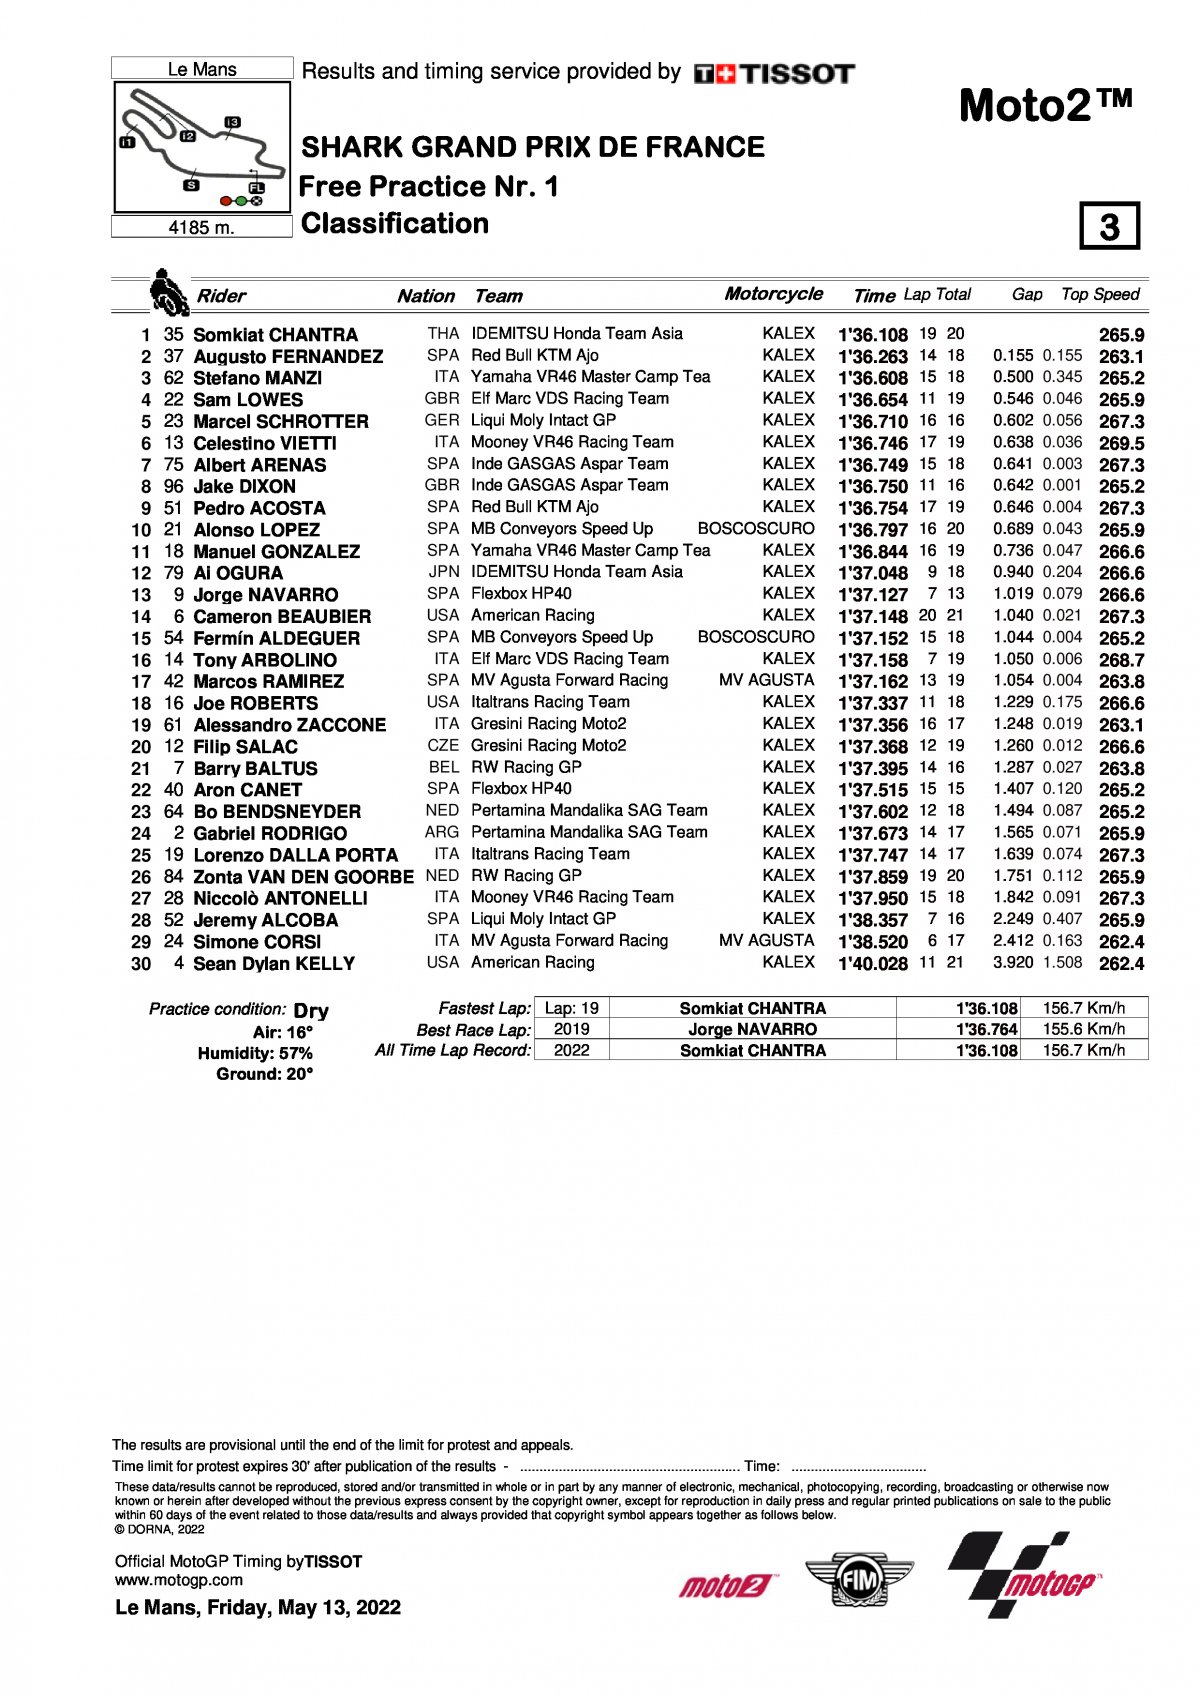 Результаты FP1 Гран-При Франции, Moto2 (13/05/2022)